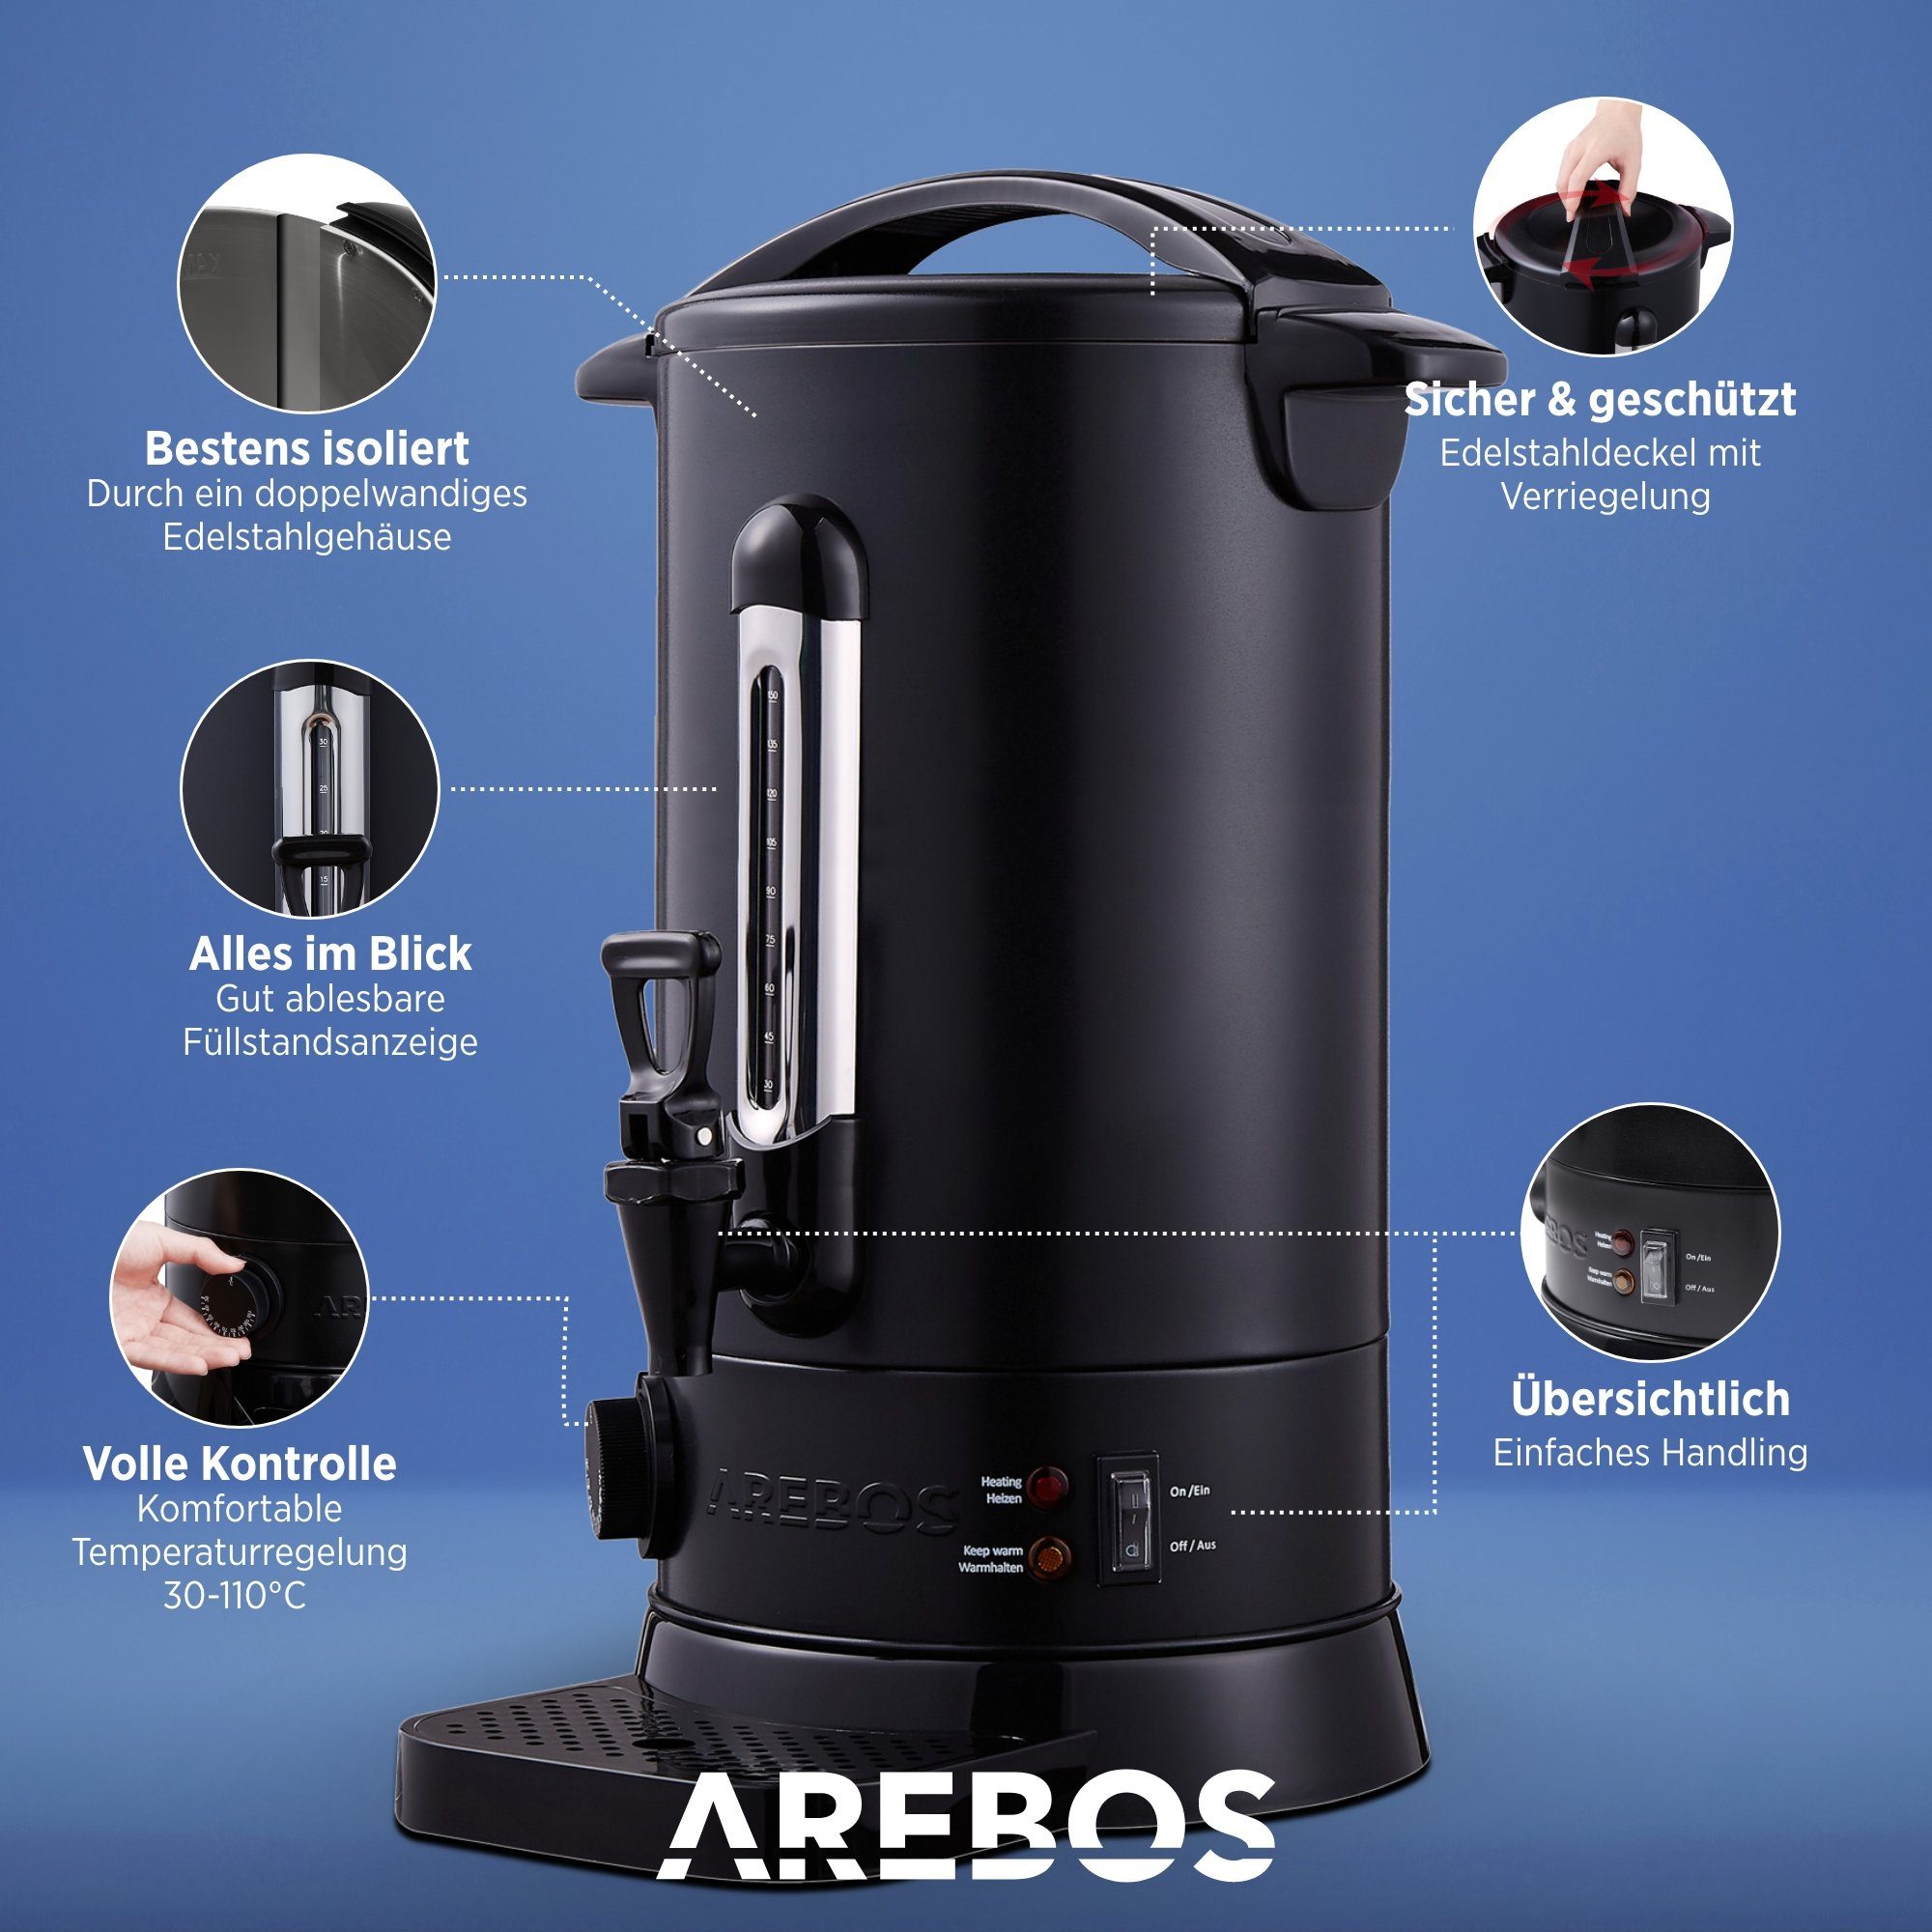 3 W Arebos Überhitzungsschutz, 30-110°C, L, Einkoch- Glühweinautomat 20 Temperatureinstellung schwarz 1650,00 Farben, und